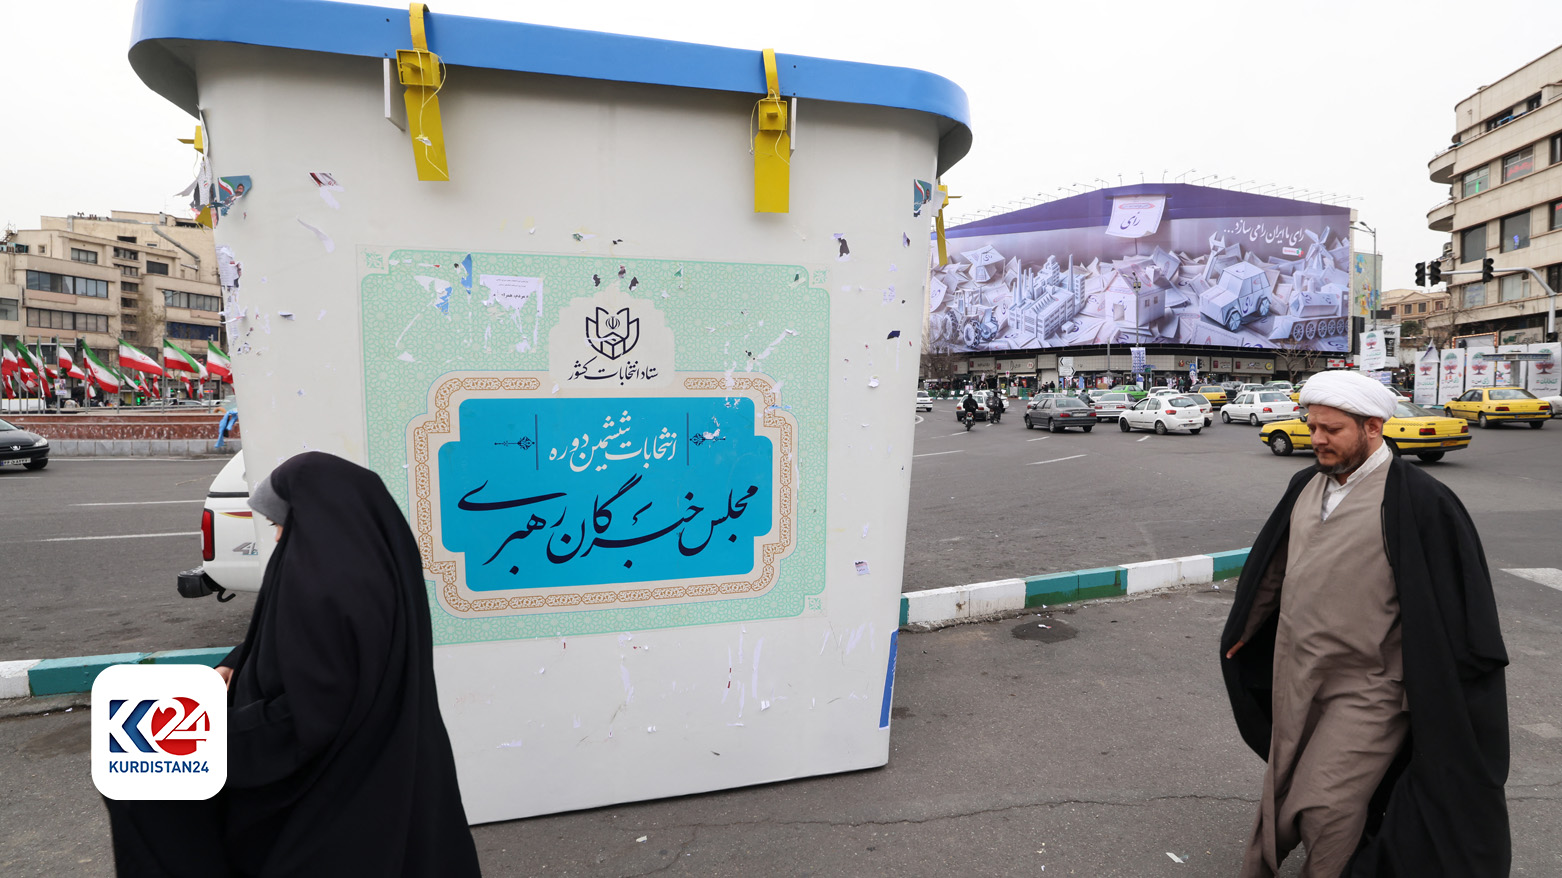 تهران ٢٨ فوریه ٢٠٢٤ یک روز مانده به برگزاری انتخابات - عکس: خبرگزاری فرانسه